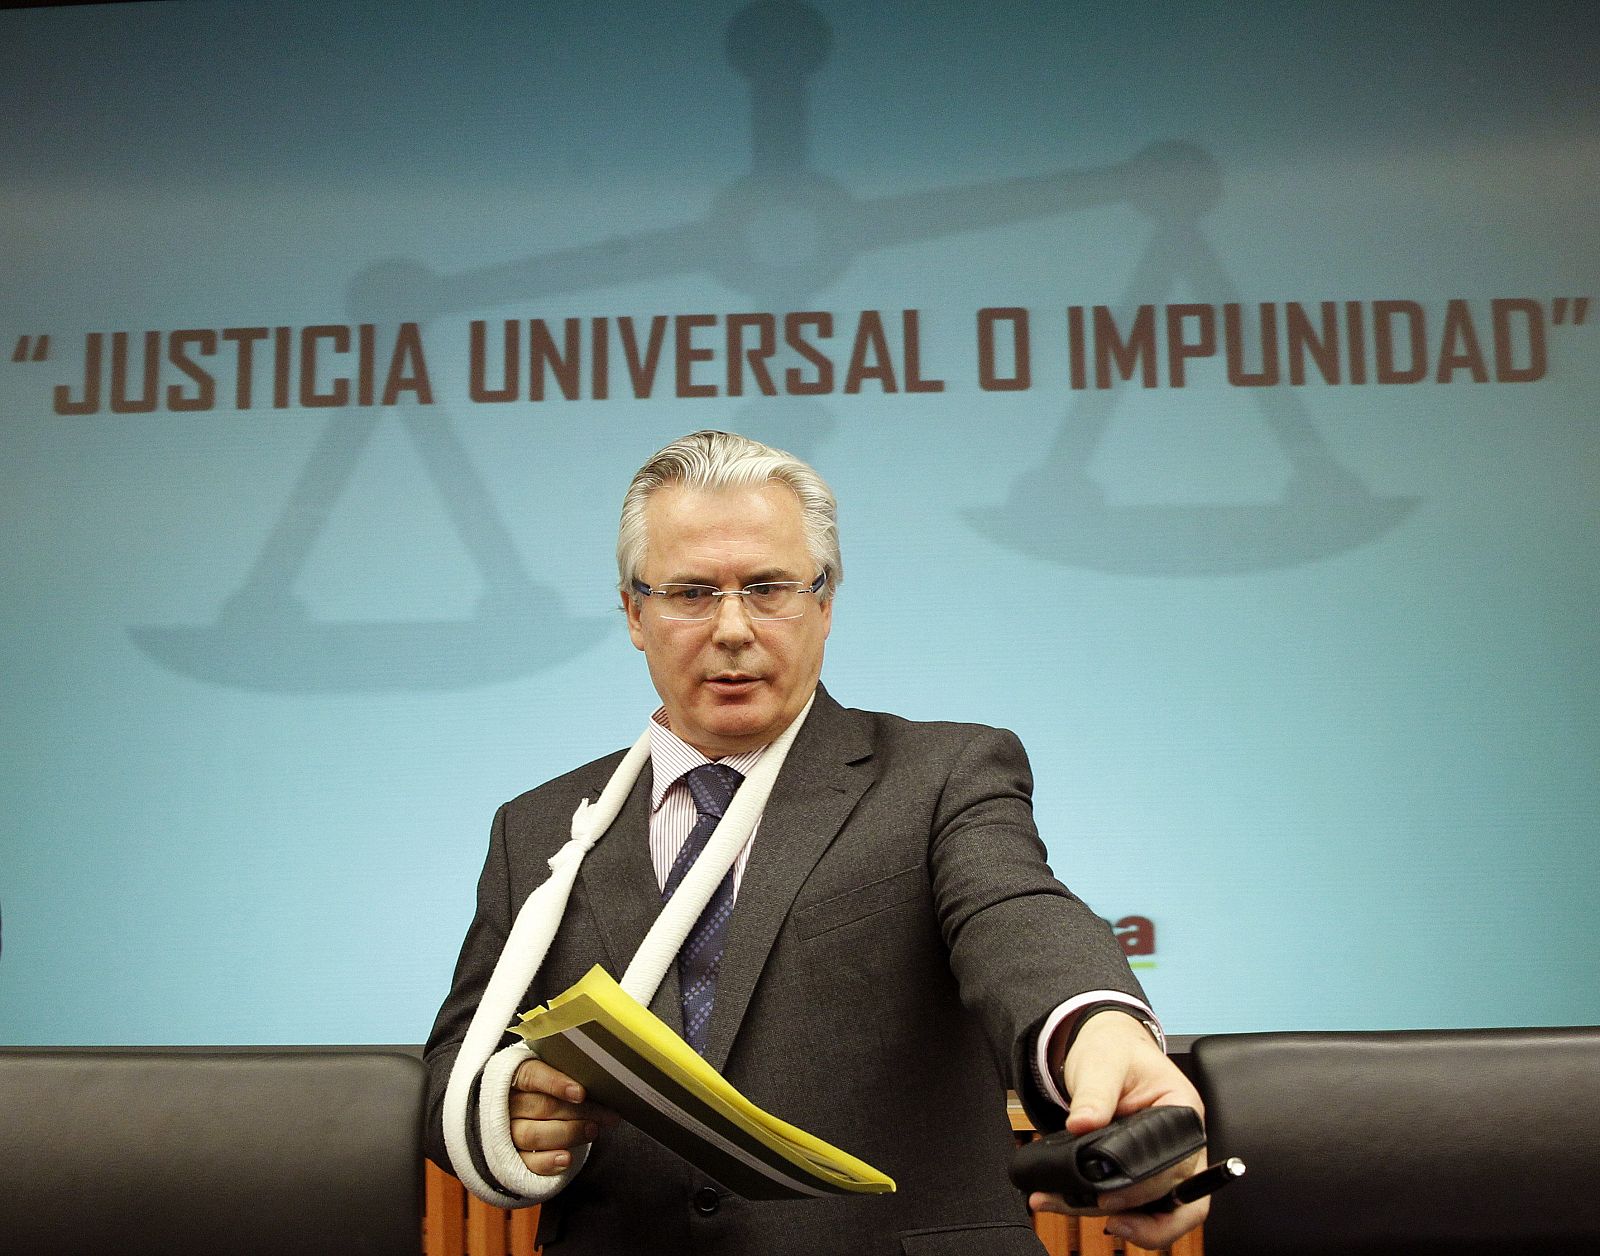 El exjuez Baltasar Garzón, durante el seminario sobre "Justicia universal o impunidad", organizado por el grupo parlamentario de la Izquierda Plural, en el Congreso de los Diputados.